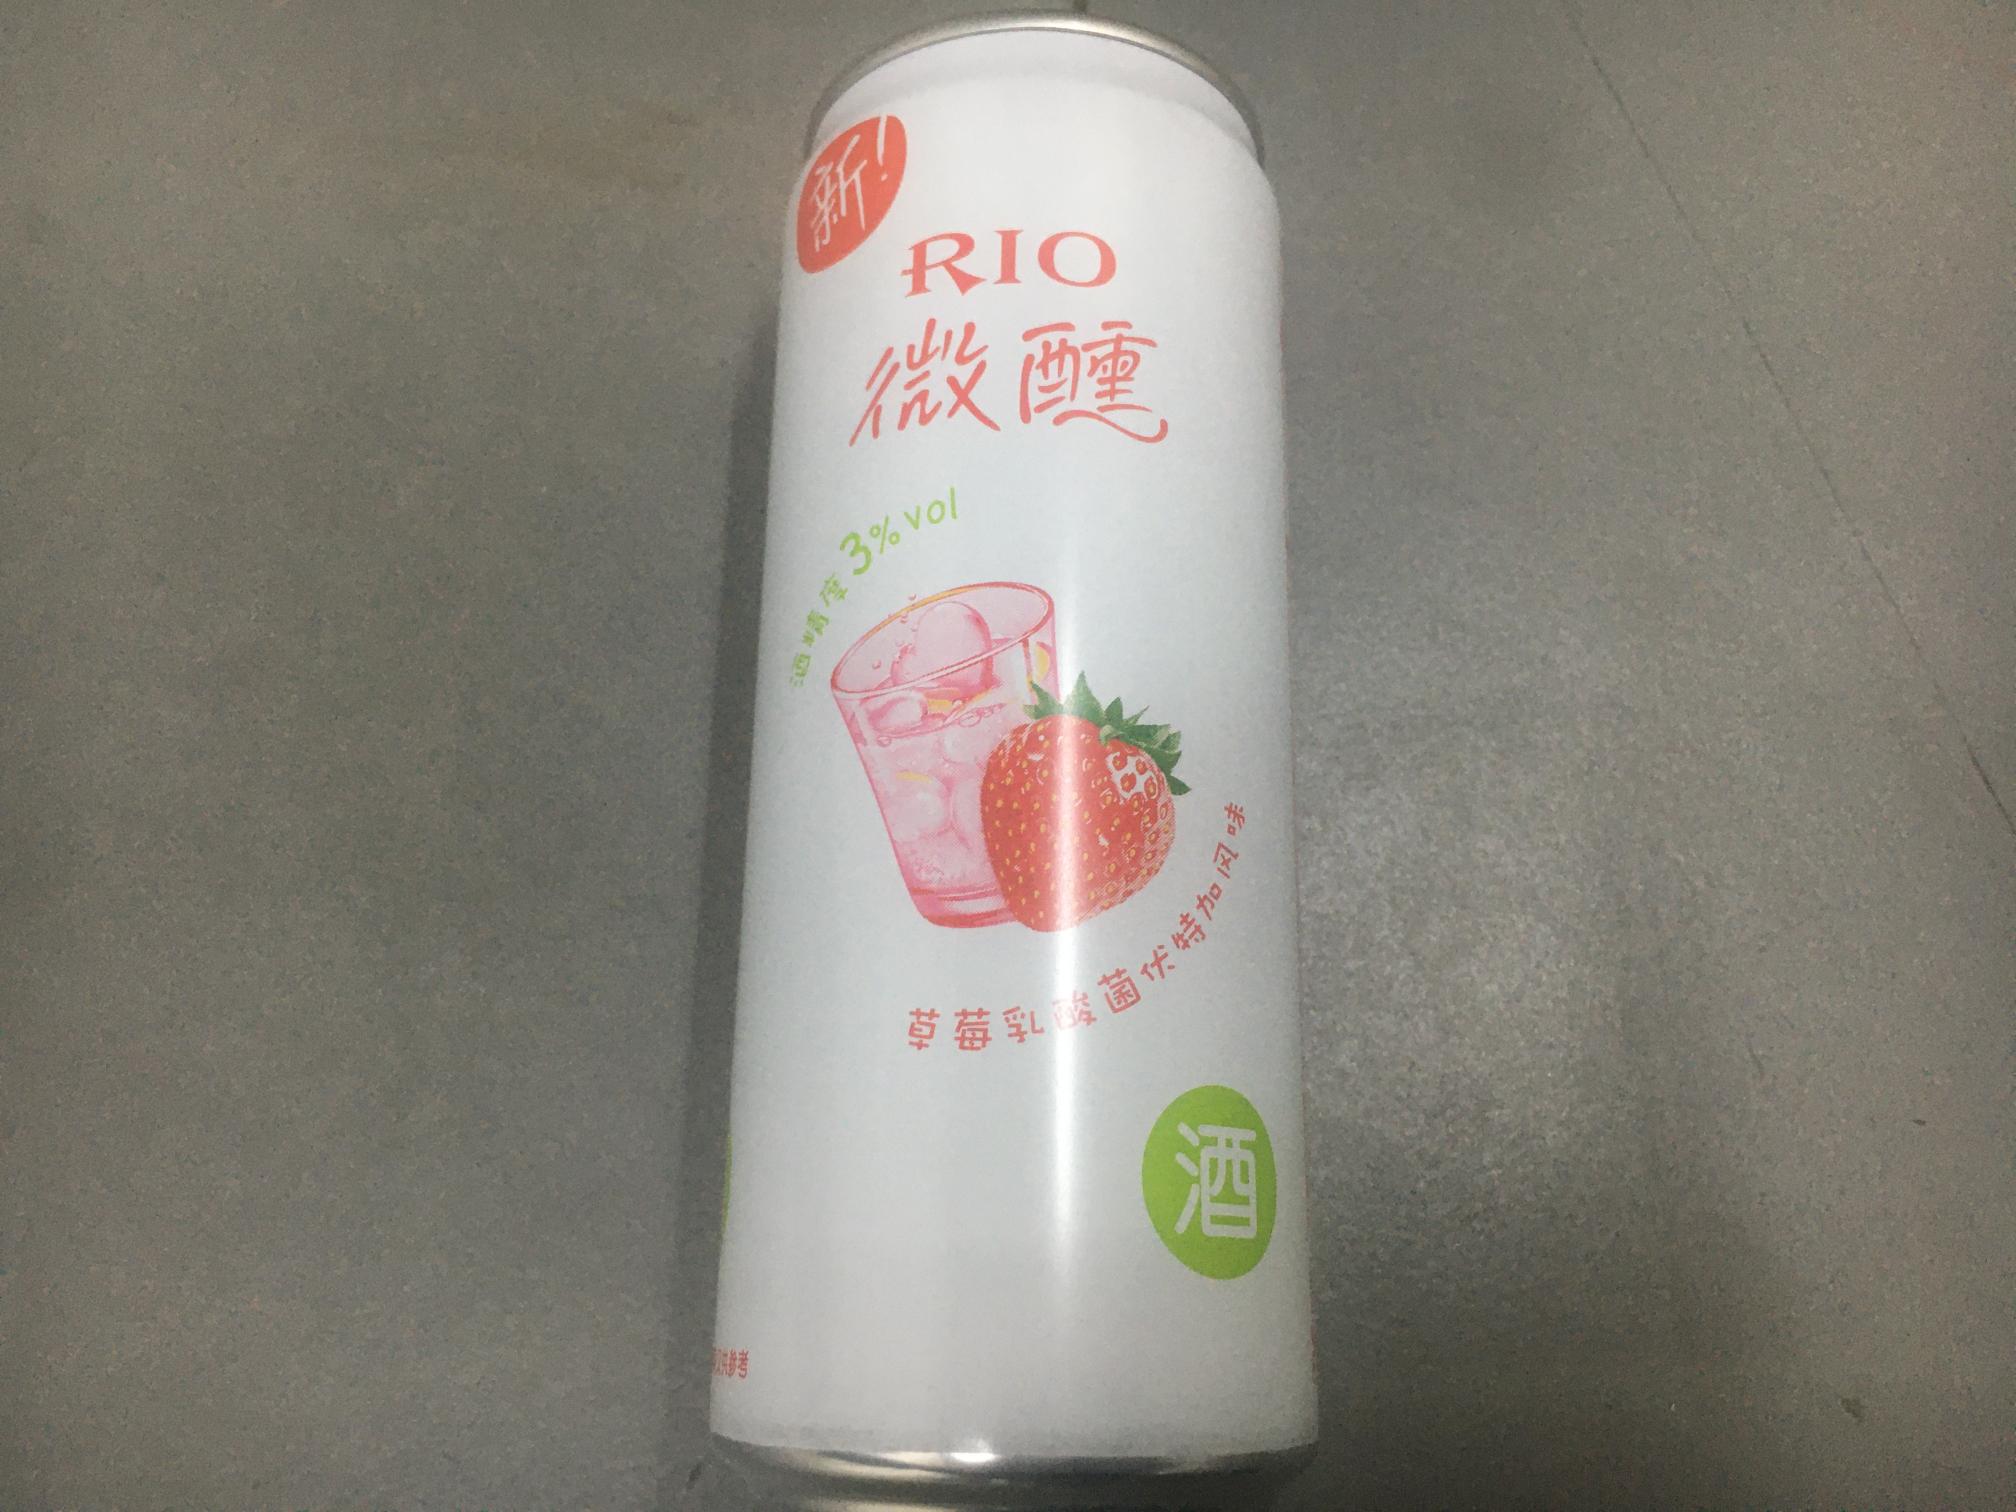 RIO微醺330ml/听(草莓乳酸菌伏特加风味)